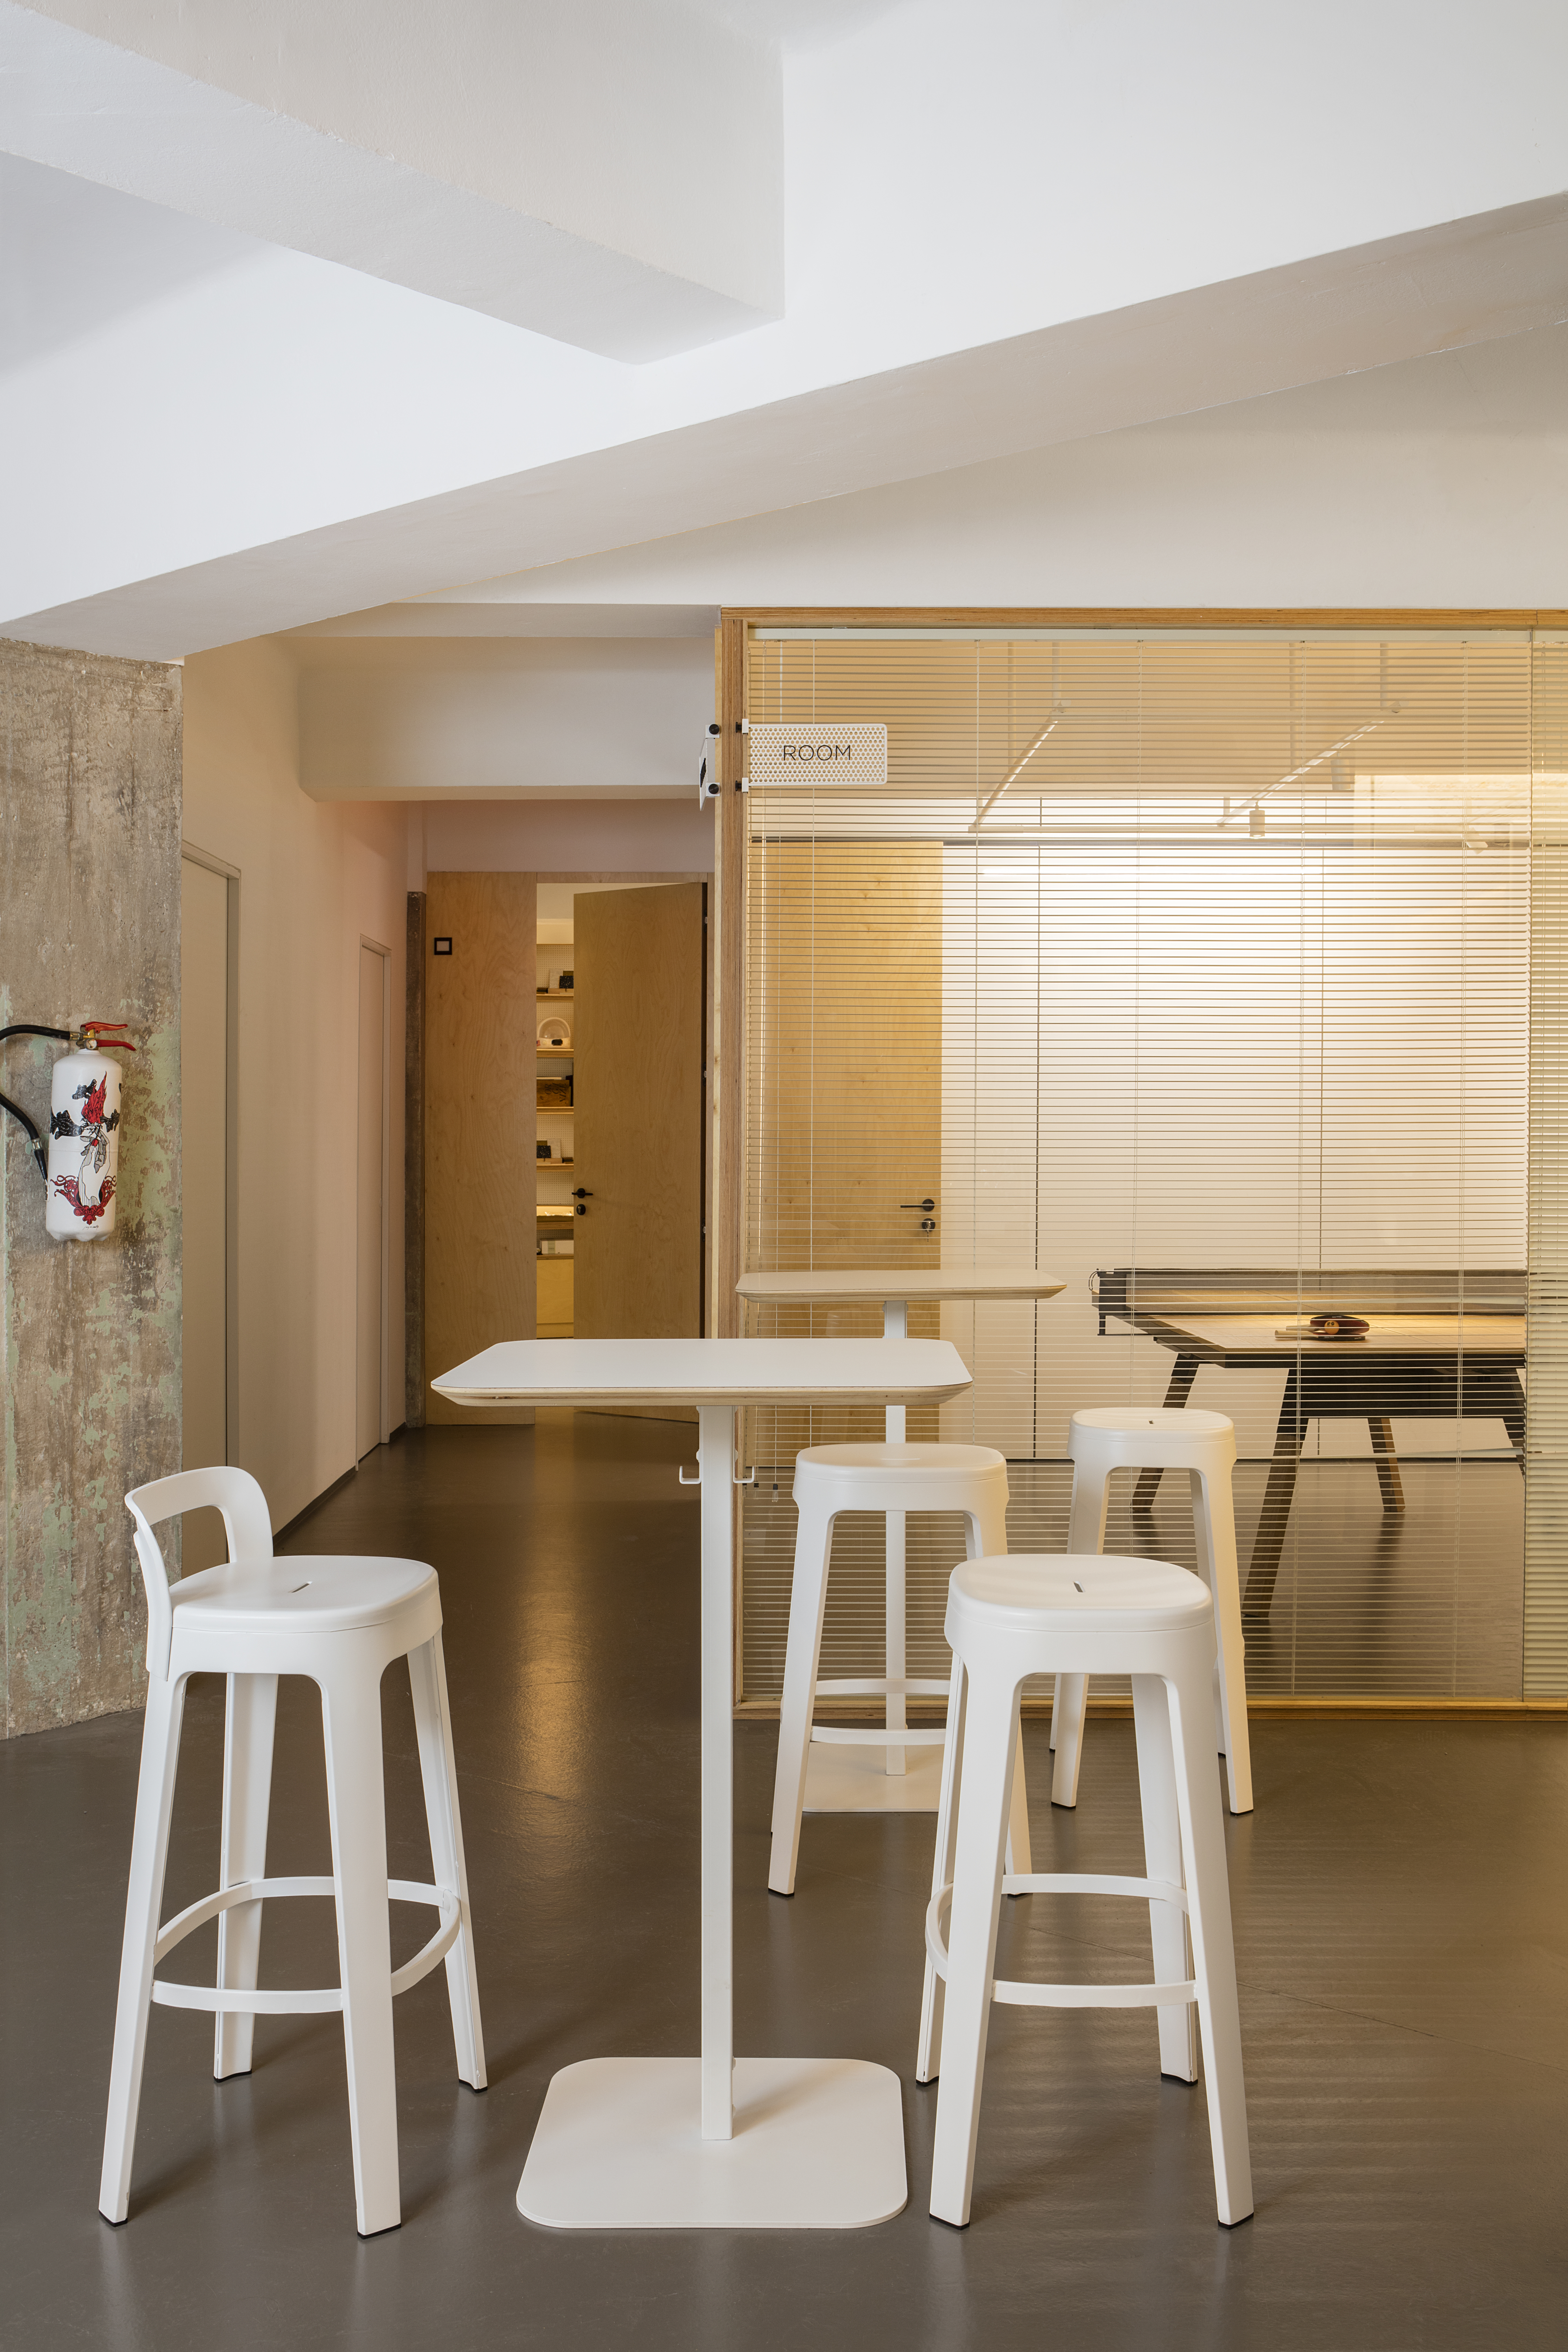 Barhocker mit Lehne "Der Hohe" - Design OMBRA Bar von RS Barcelona 